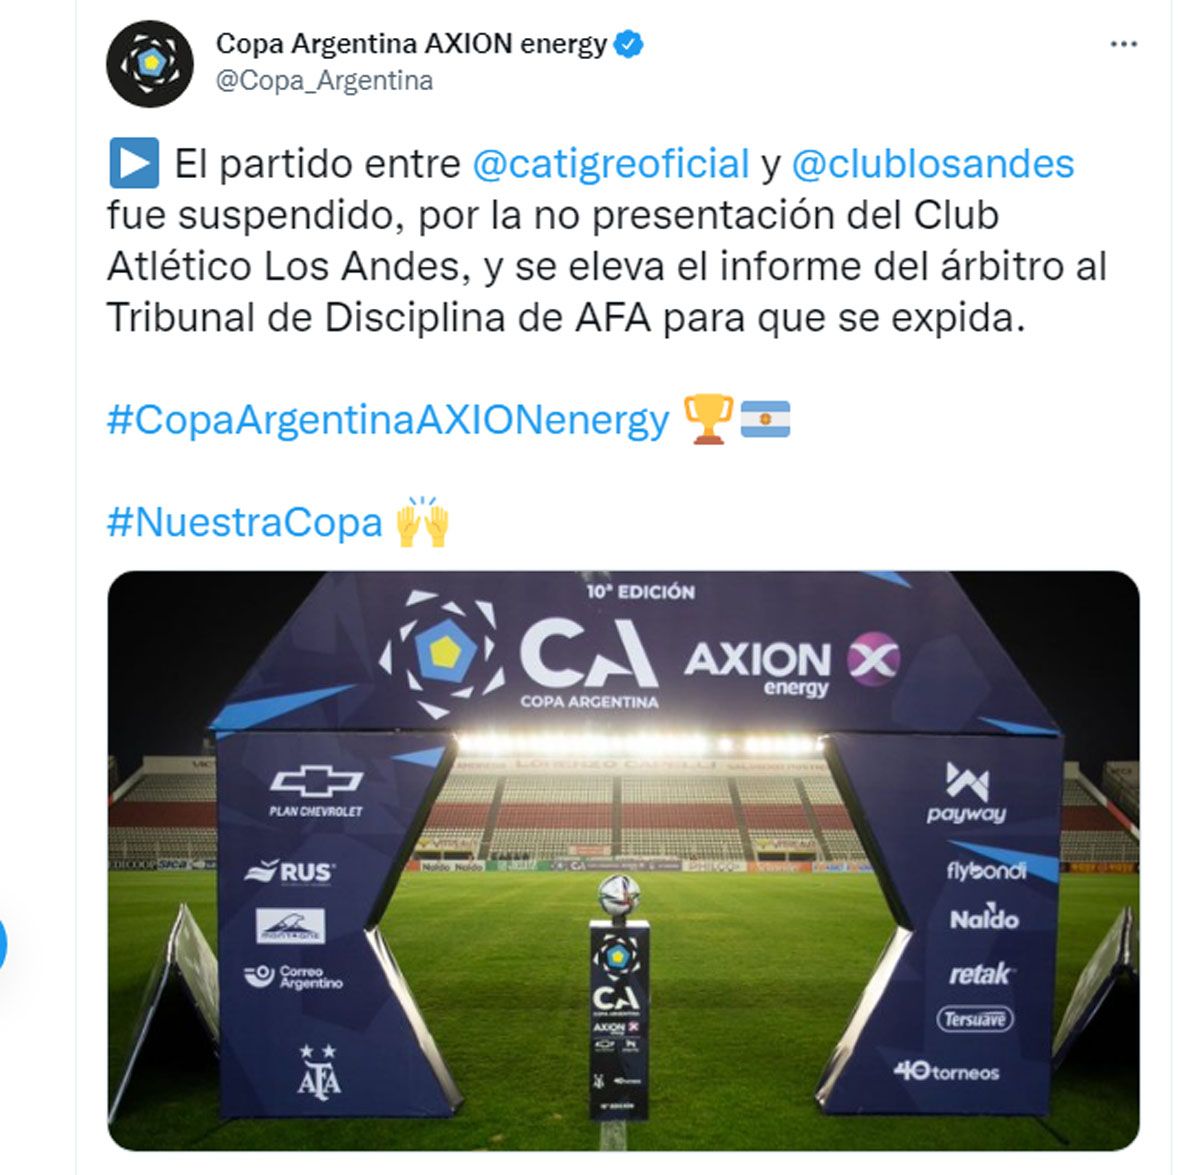 La organización de la Copa Argentina anunció en sus redes sociales la suspensión de Los Andes vs. Tigre